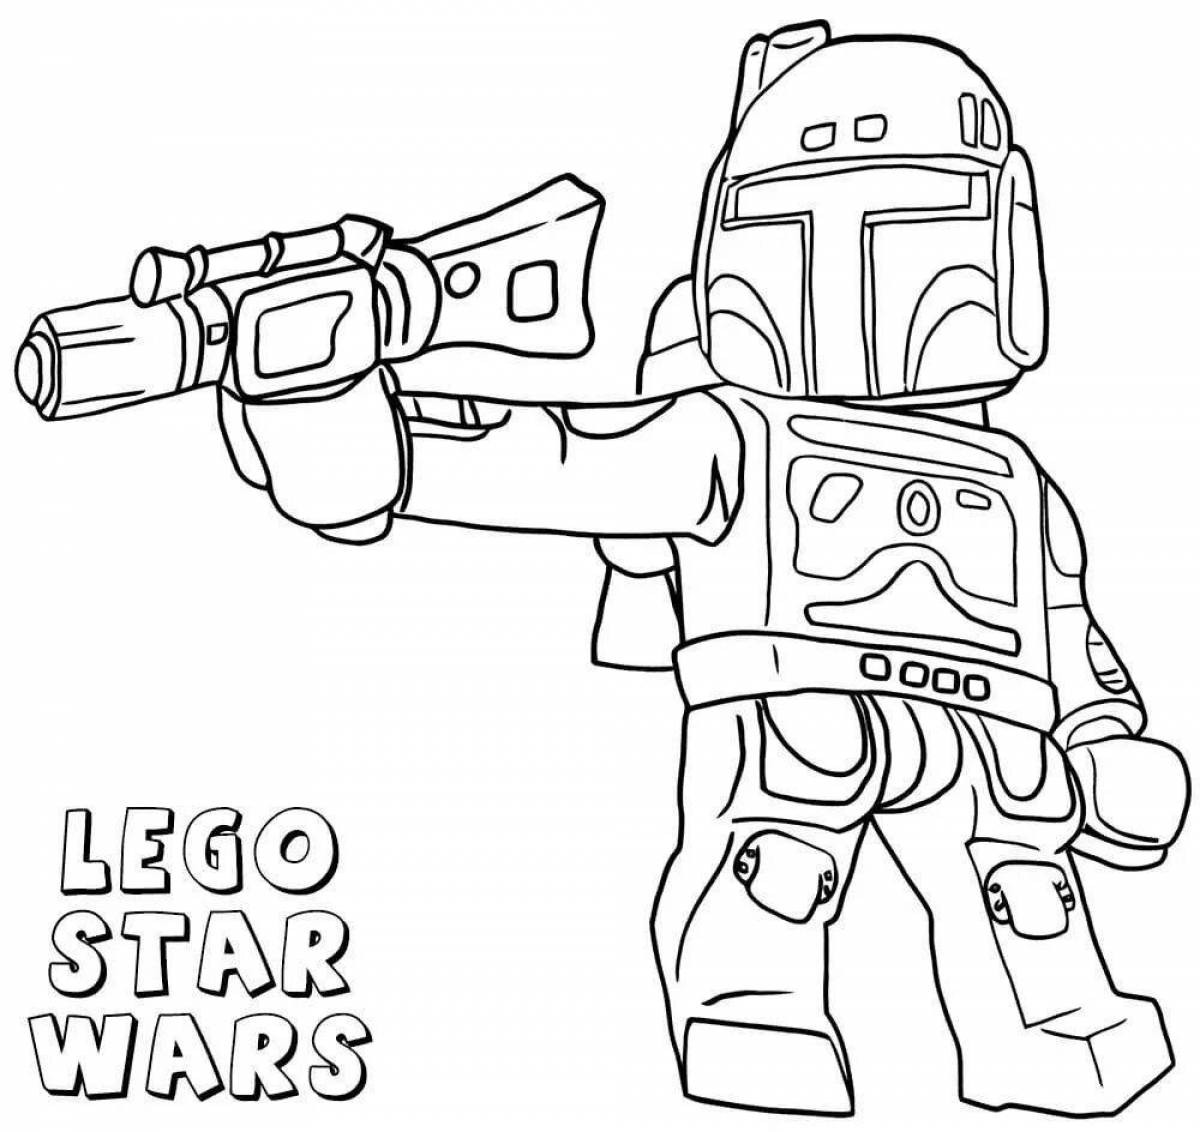 Fun coloring lego star wars